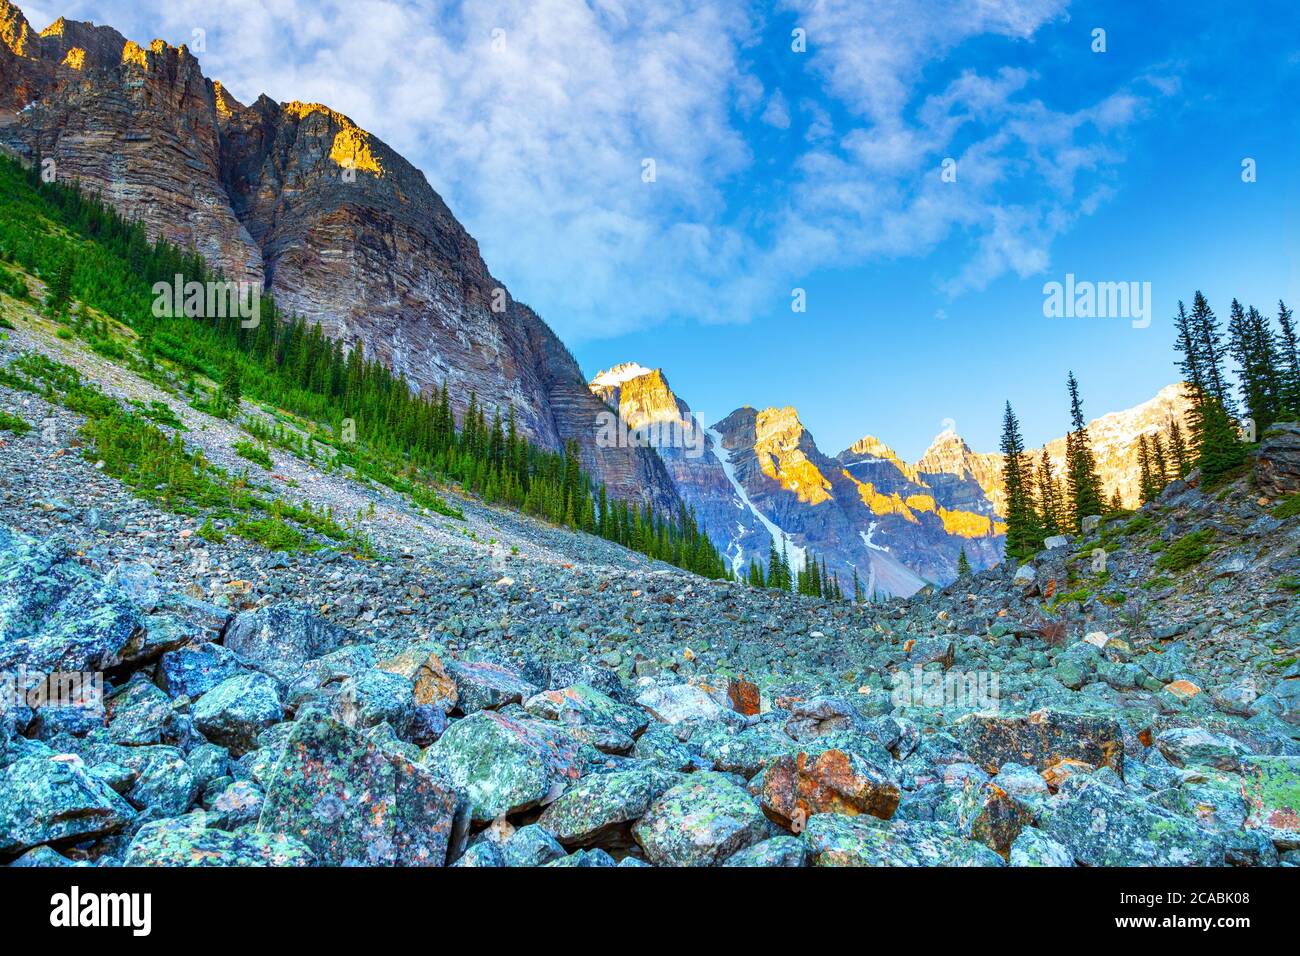 Les pentes des cries sous la tour de Babel le long du sentier des lacs de consolation près du lac Moraine dans le parc national Banff, avec le champ de rochers et la vallée des dix Banque D'Images